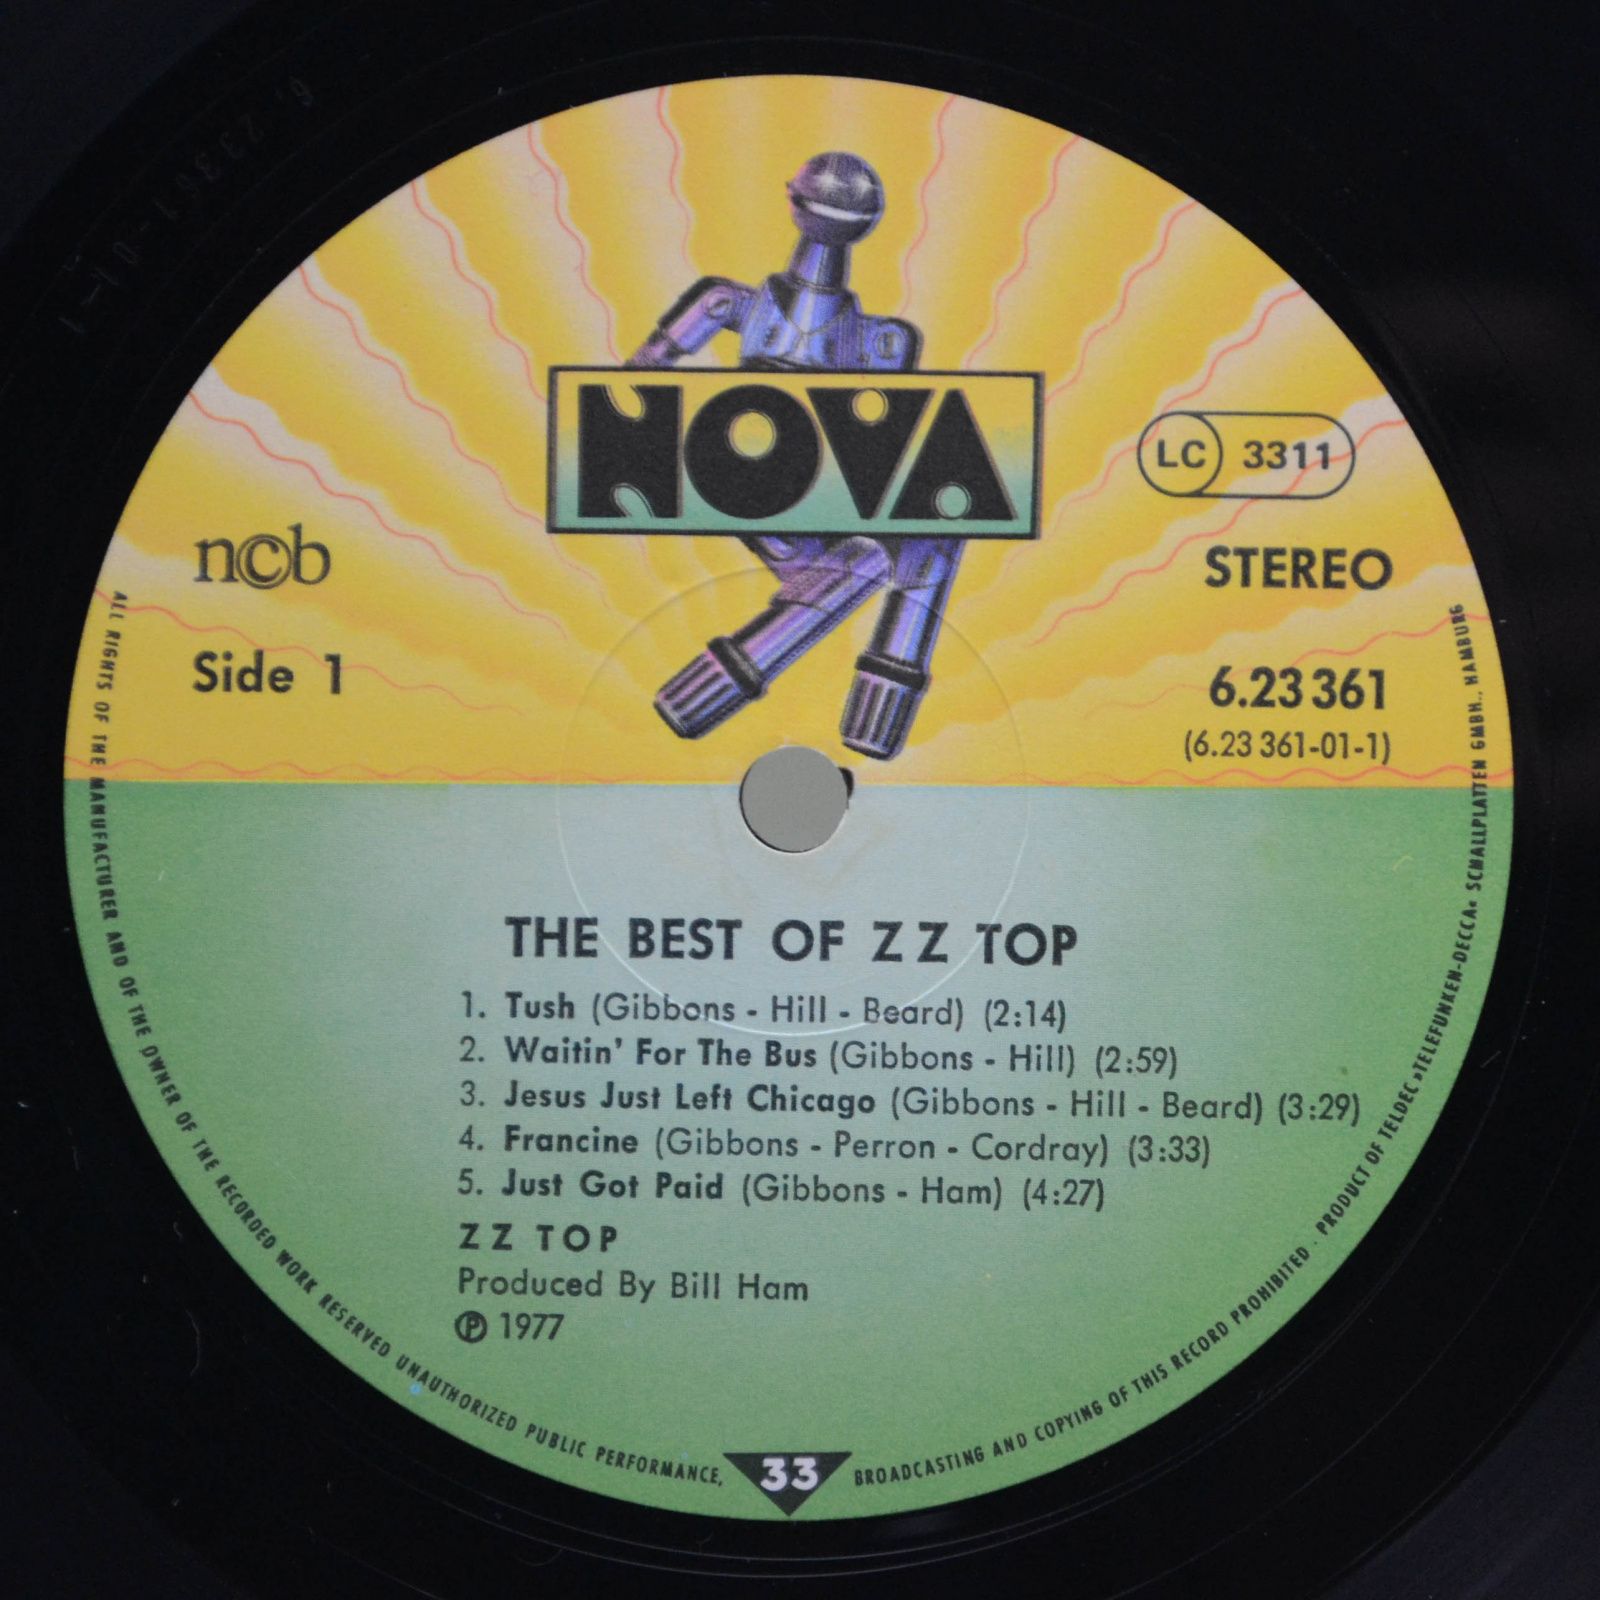 ZZ Top — The Best Of ZZ Top, 1977